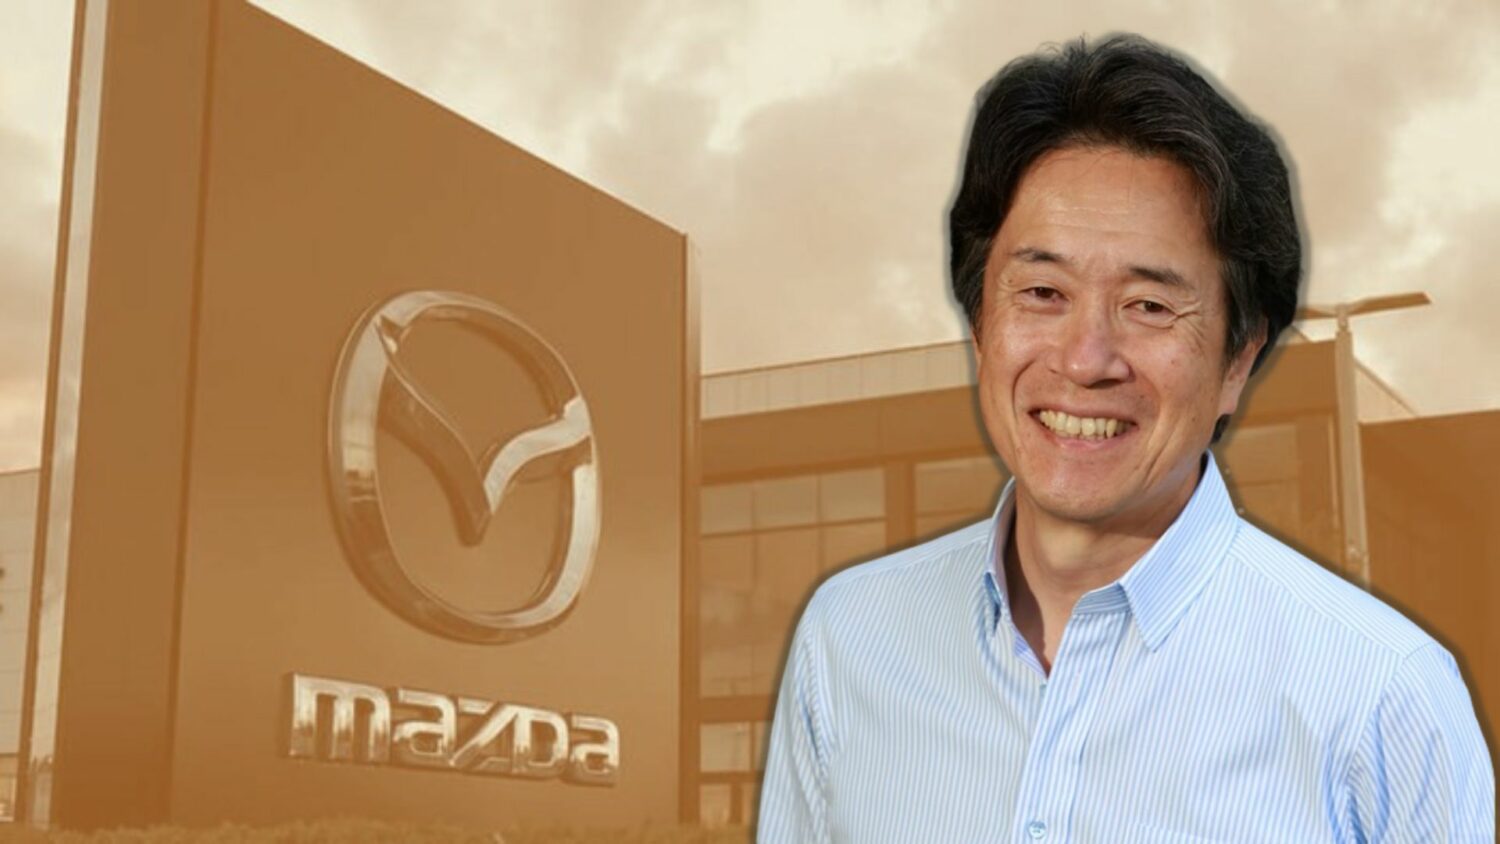 Mazda, Masahiro Moro